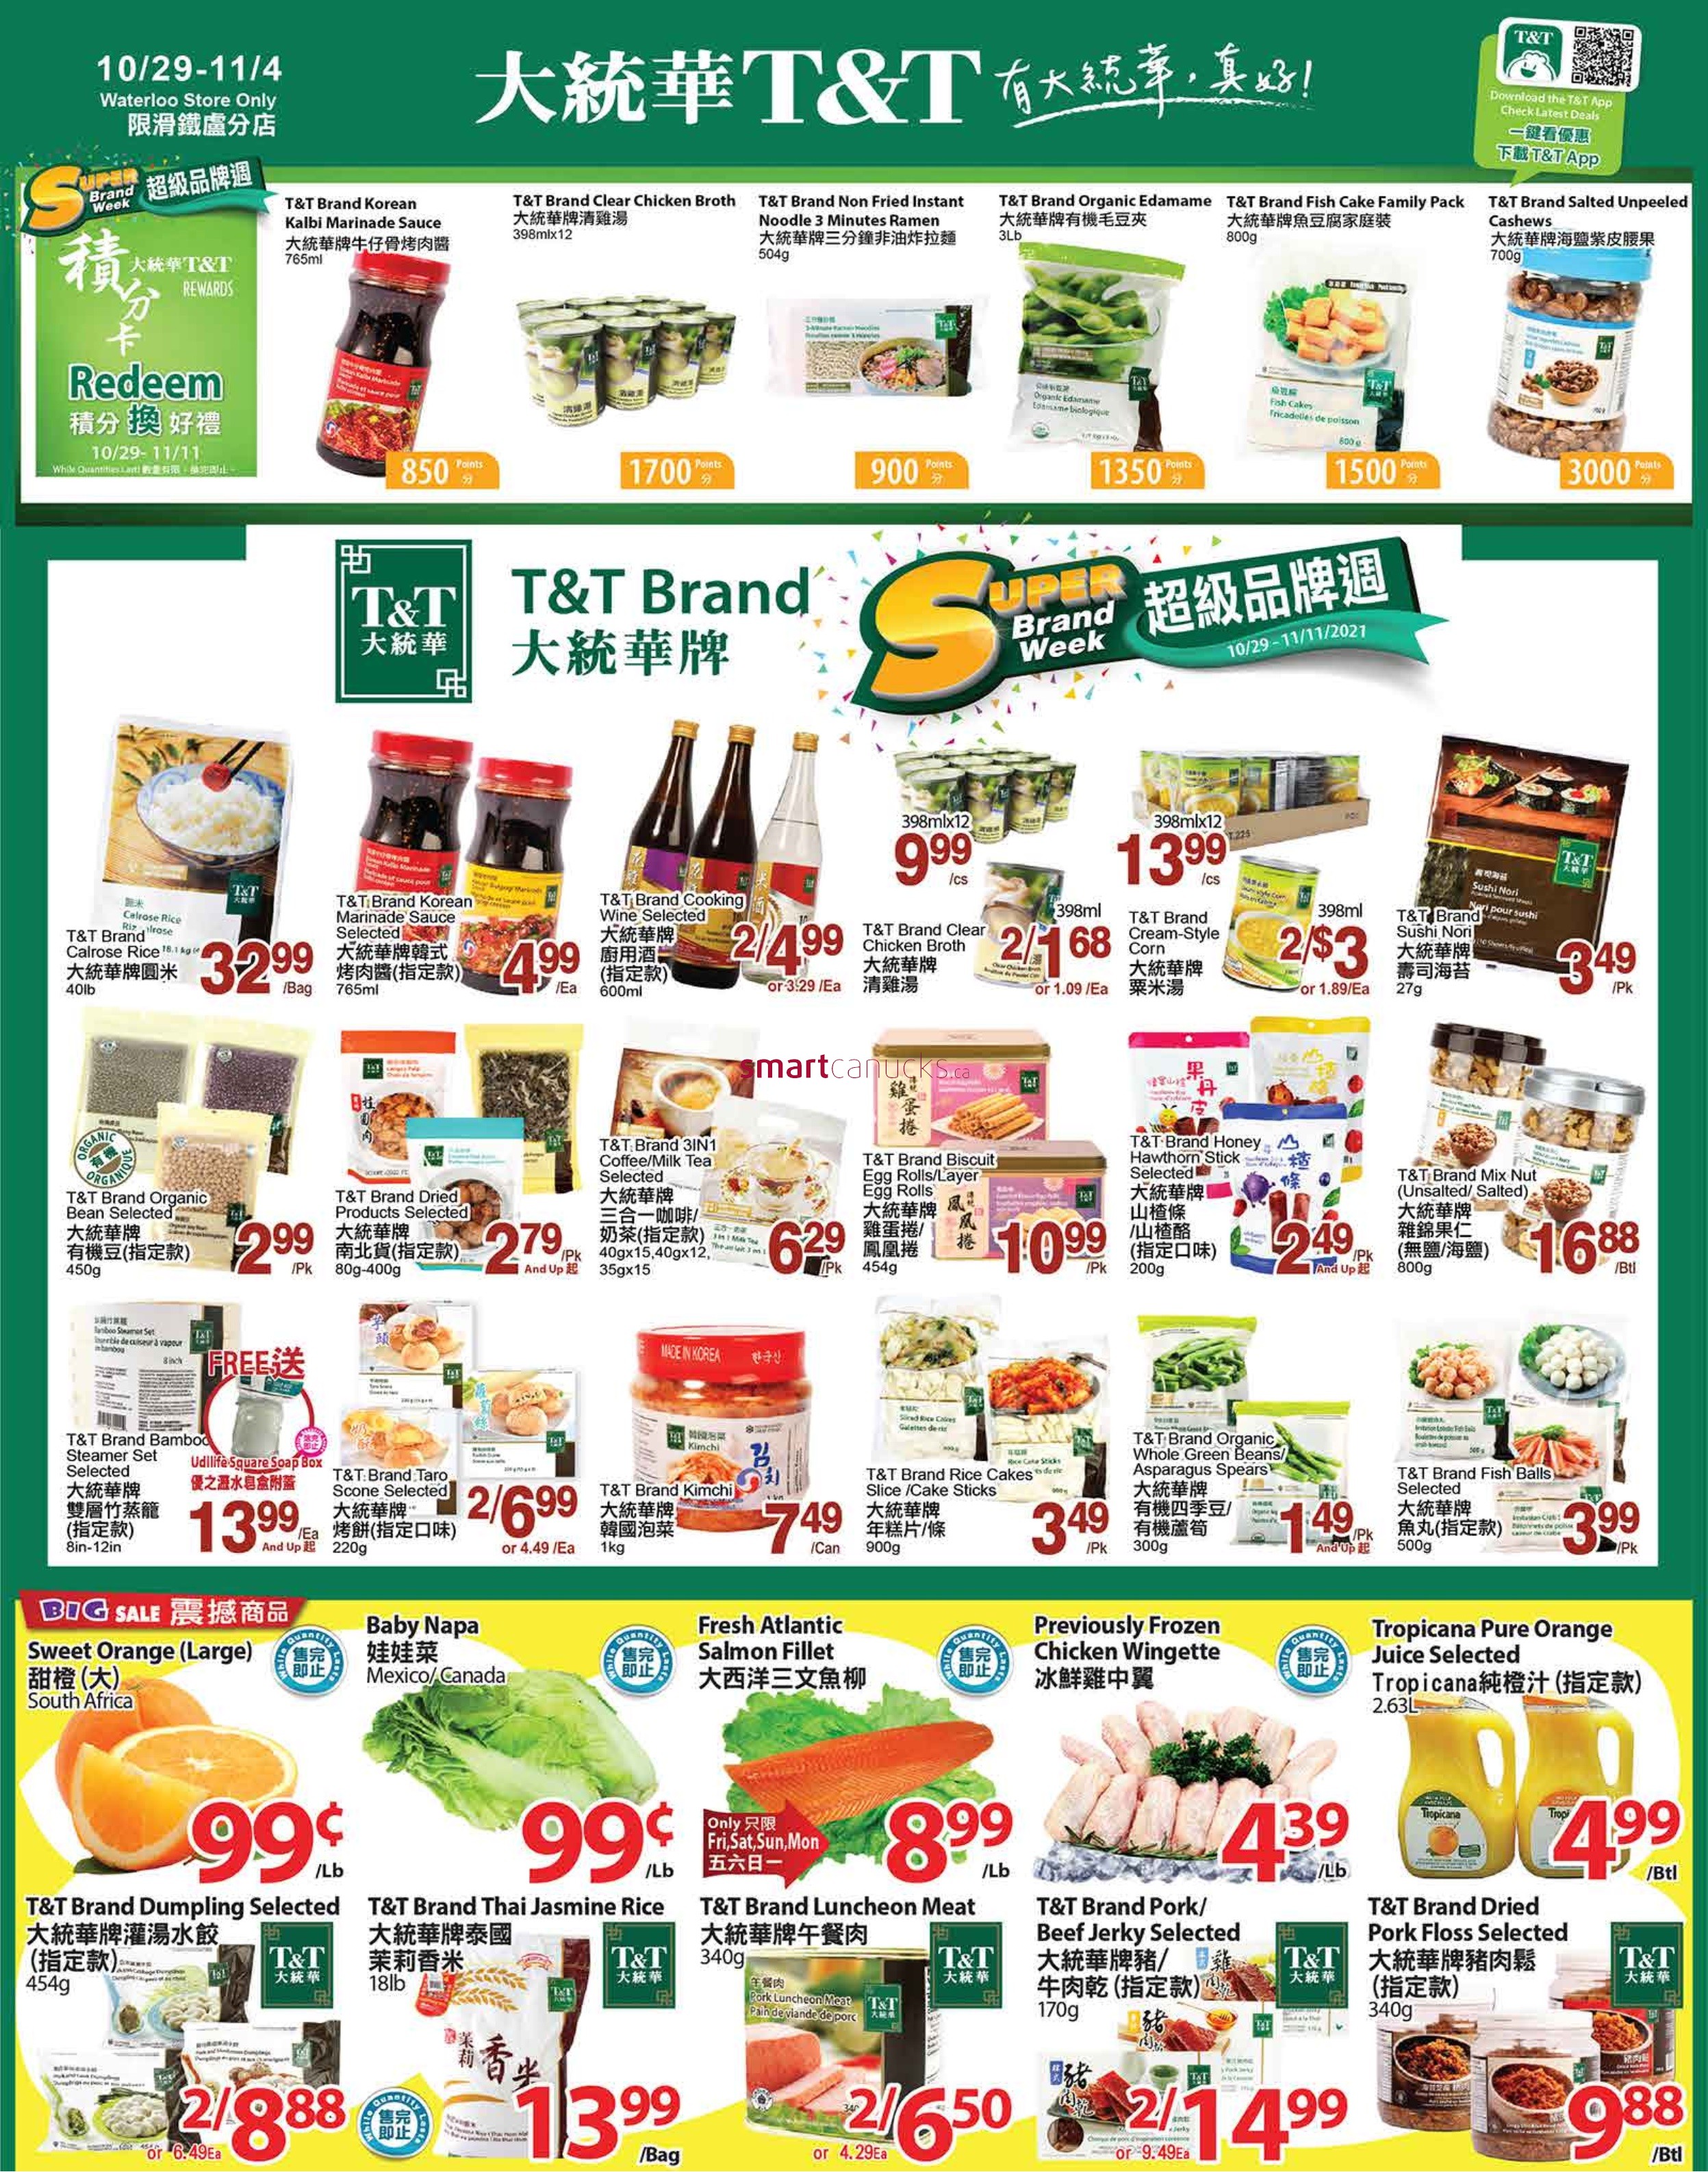 tt-supermarket-waterloo-flyer-october-29-to-november-4-1.jpg